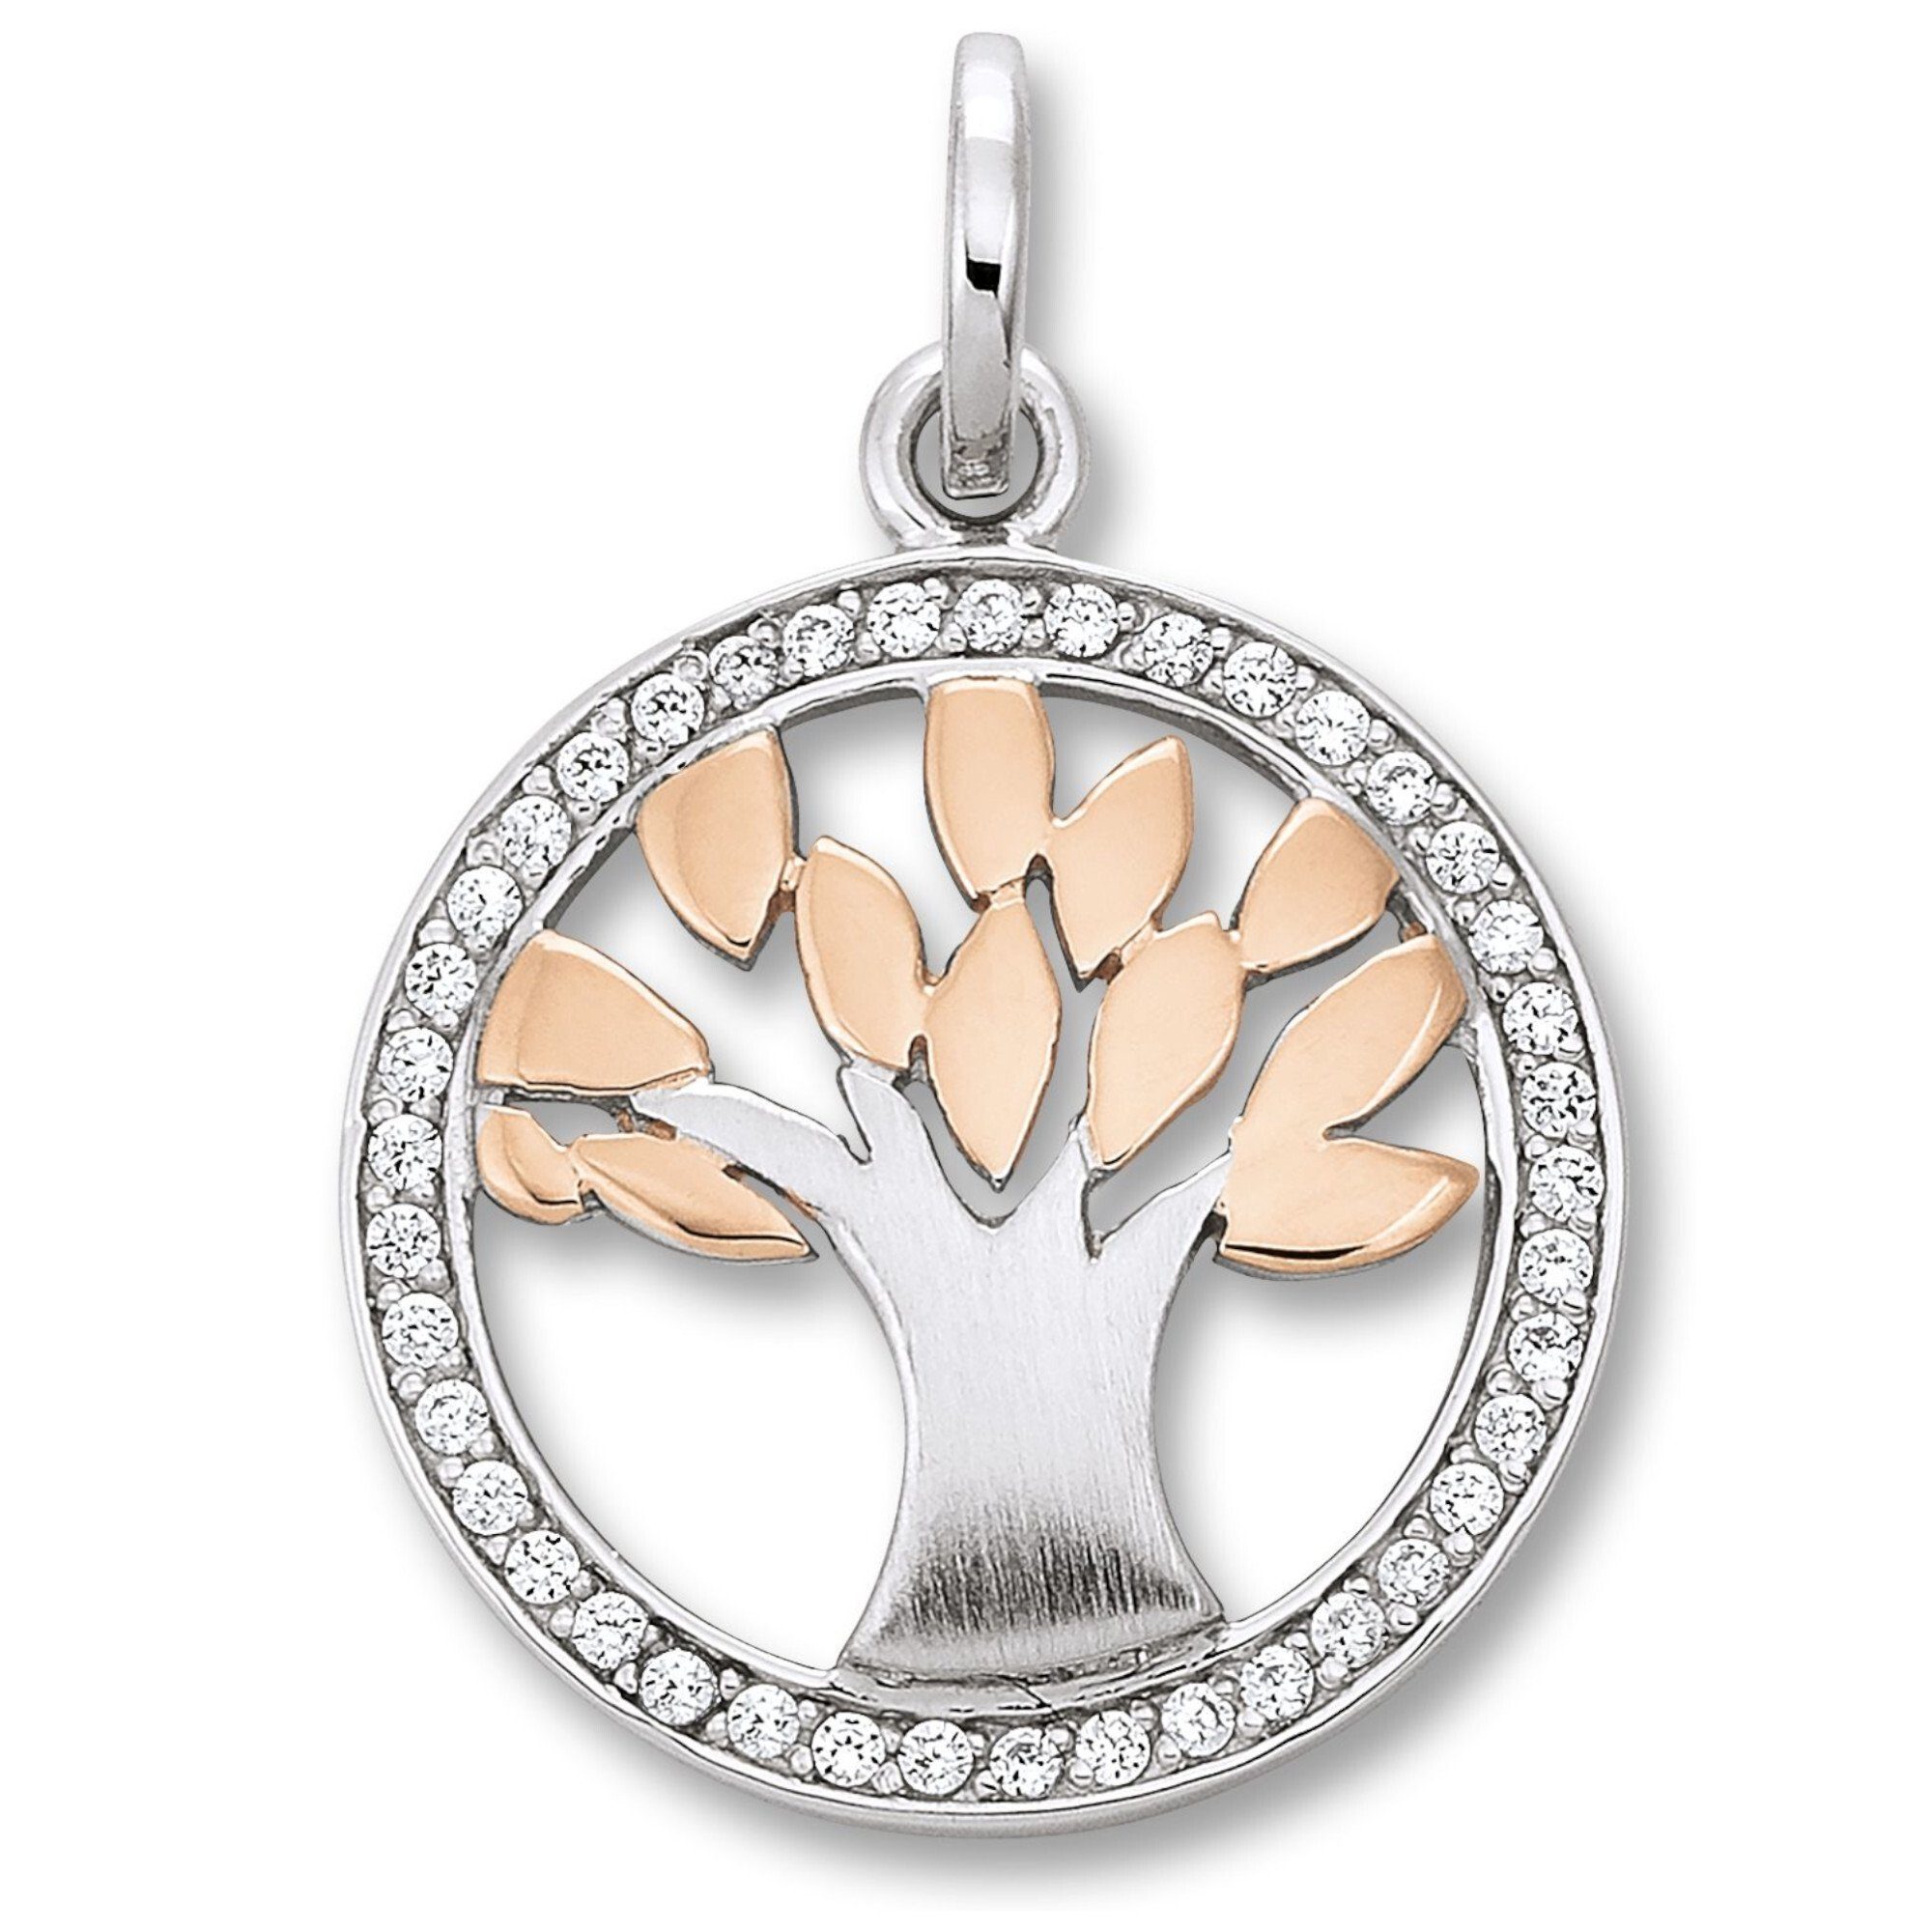 Zirkonia Damen Anhänger aus Silber, Kettenanhänger Lebensbaum Silber 925 Schmuck Lebensbaum ONE ELEMENT